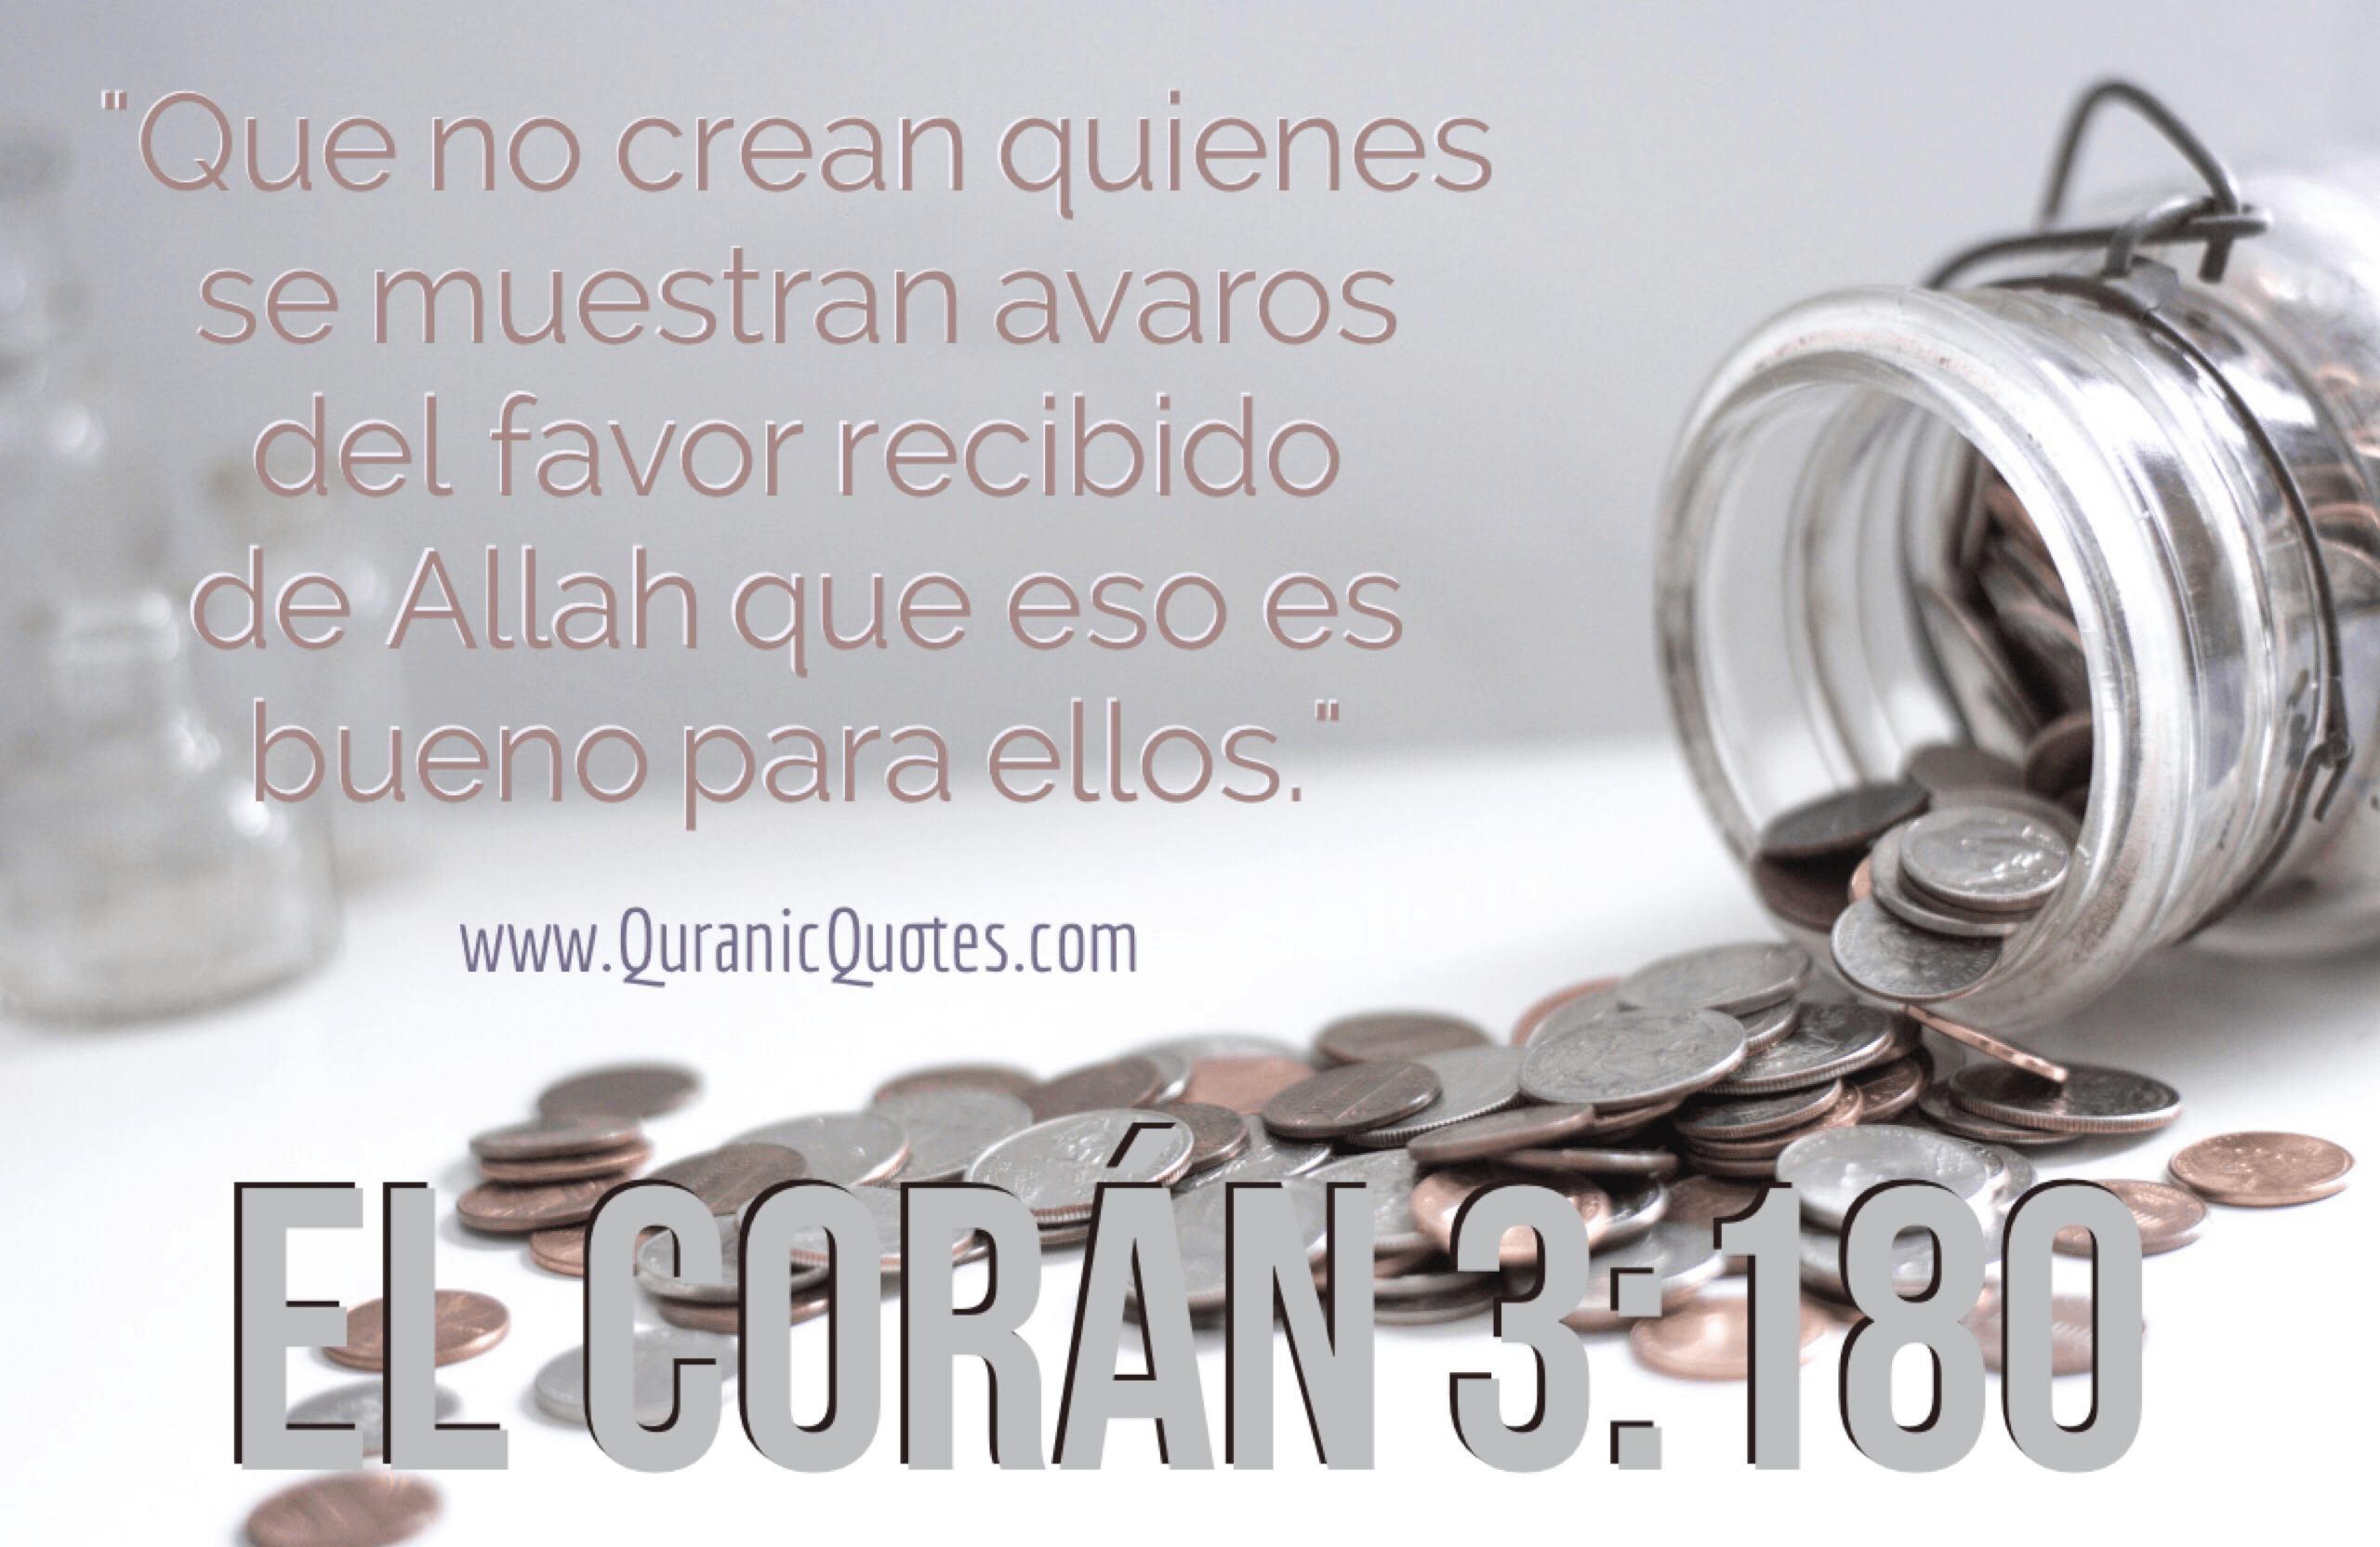 Quranic Quotes Español #101